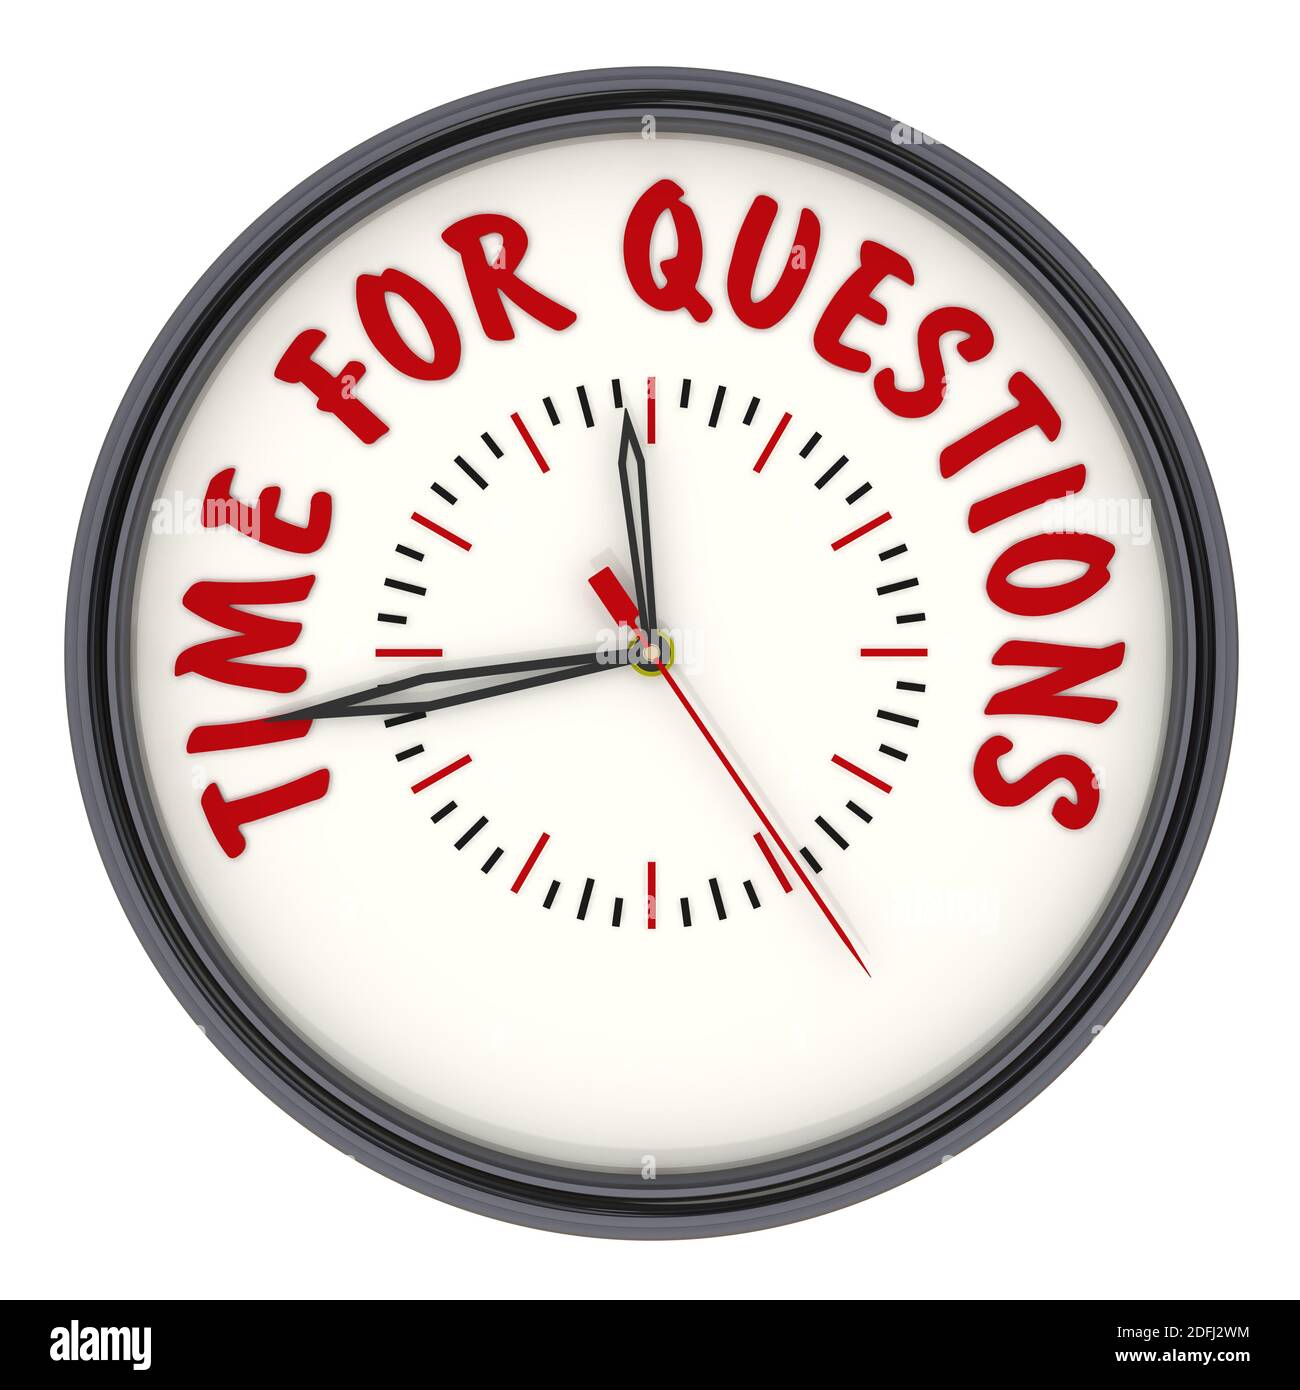 Il est temps de poser des questions. Horloge avec texte. Horloge analogique avec texte rouge POUR LES QUESTIONS. Isolé. Illustration 3D Banque D'Images